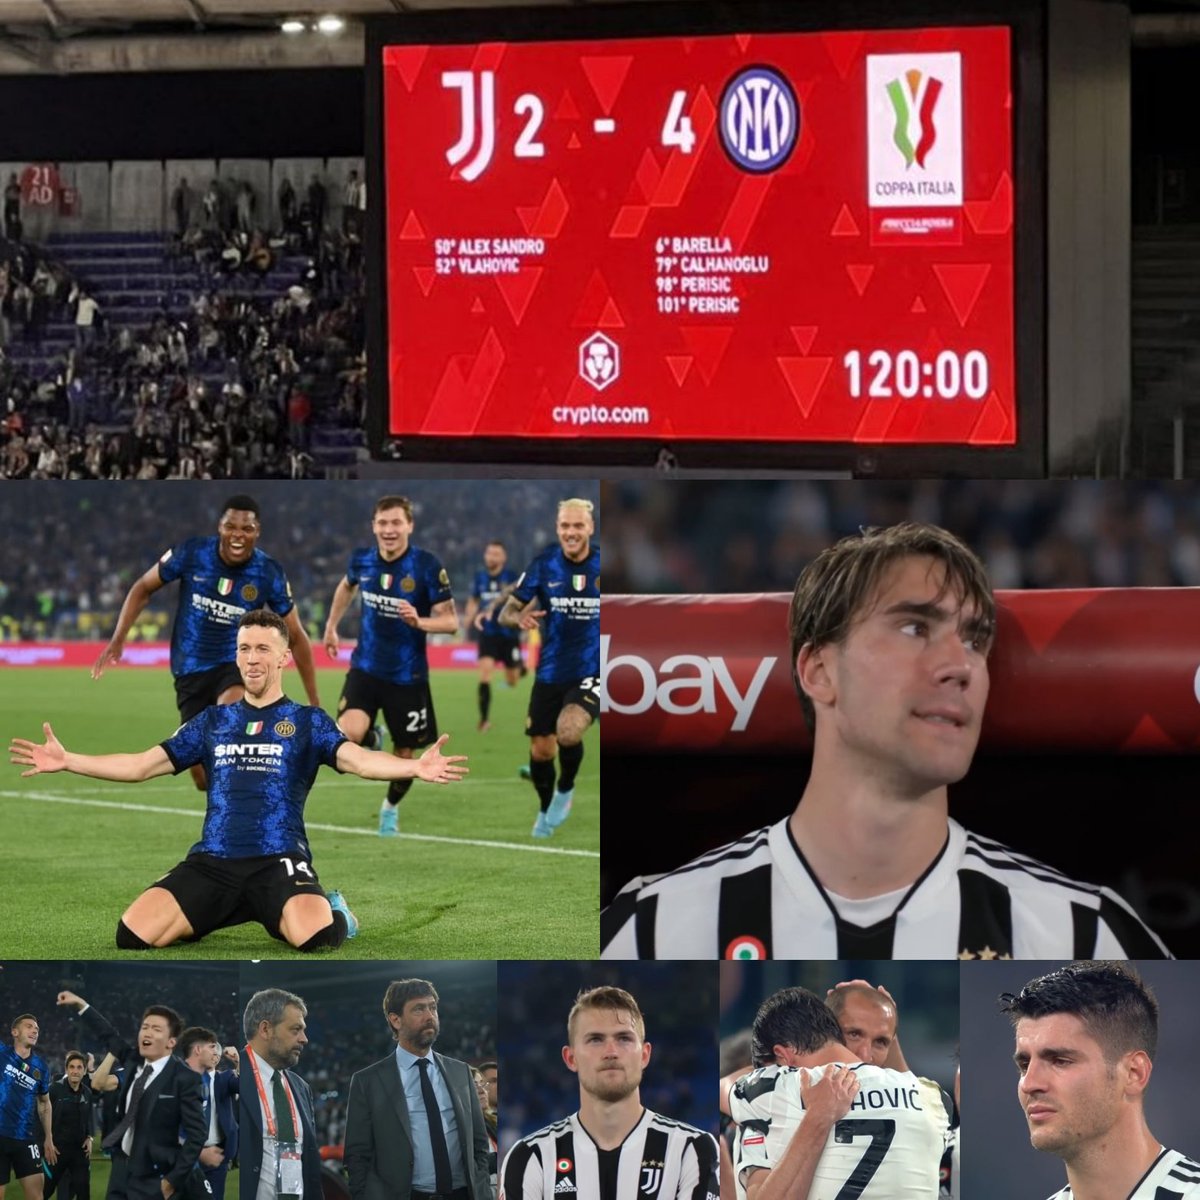 𝟭𝟭 𝗠𝗮𝗴𝗴𝗶𝗼 𝟮𝟬𝟮𝟮:B𝐮o𝐧 𝐀n𝐧i𝐯e𝐫s𝐚r𝐢o 
Le emozioni che riusciamo a provocare nei tifosi e negli avversari sono uniche...💦💦💦
#JuventusInter
#CoppaItalia
#Inter